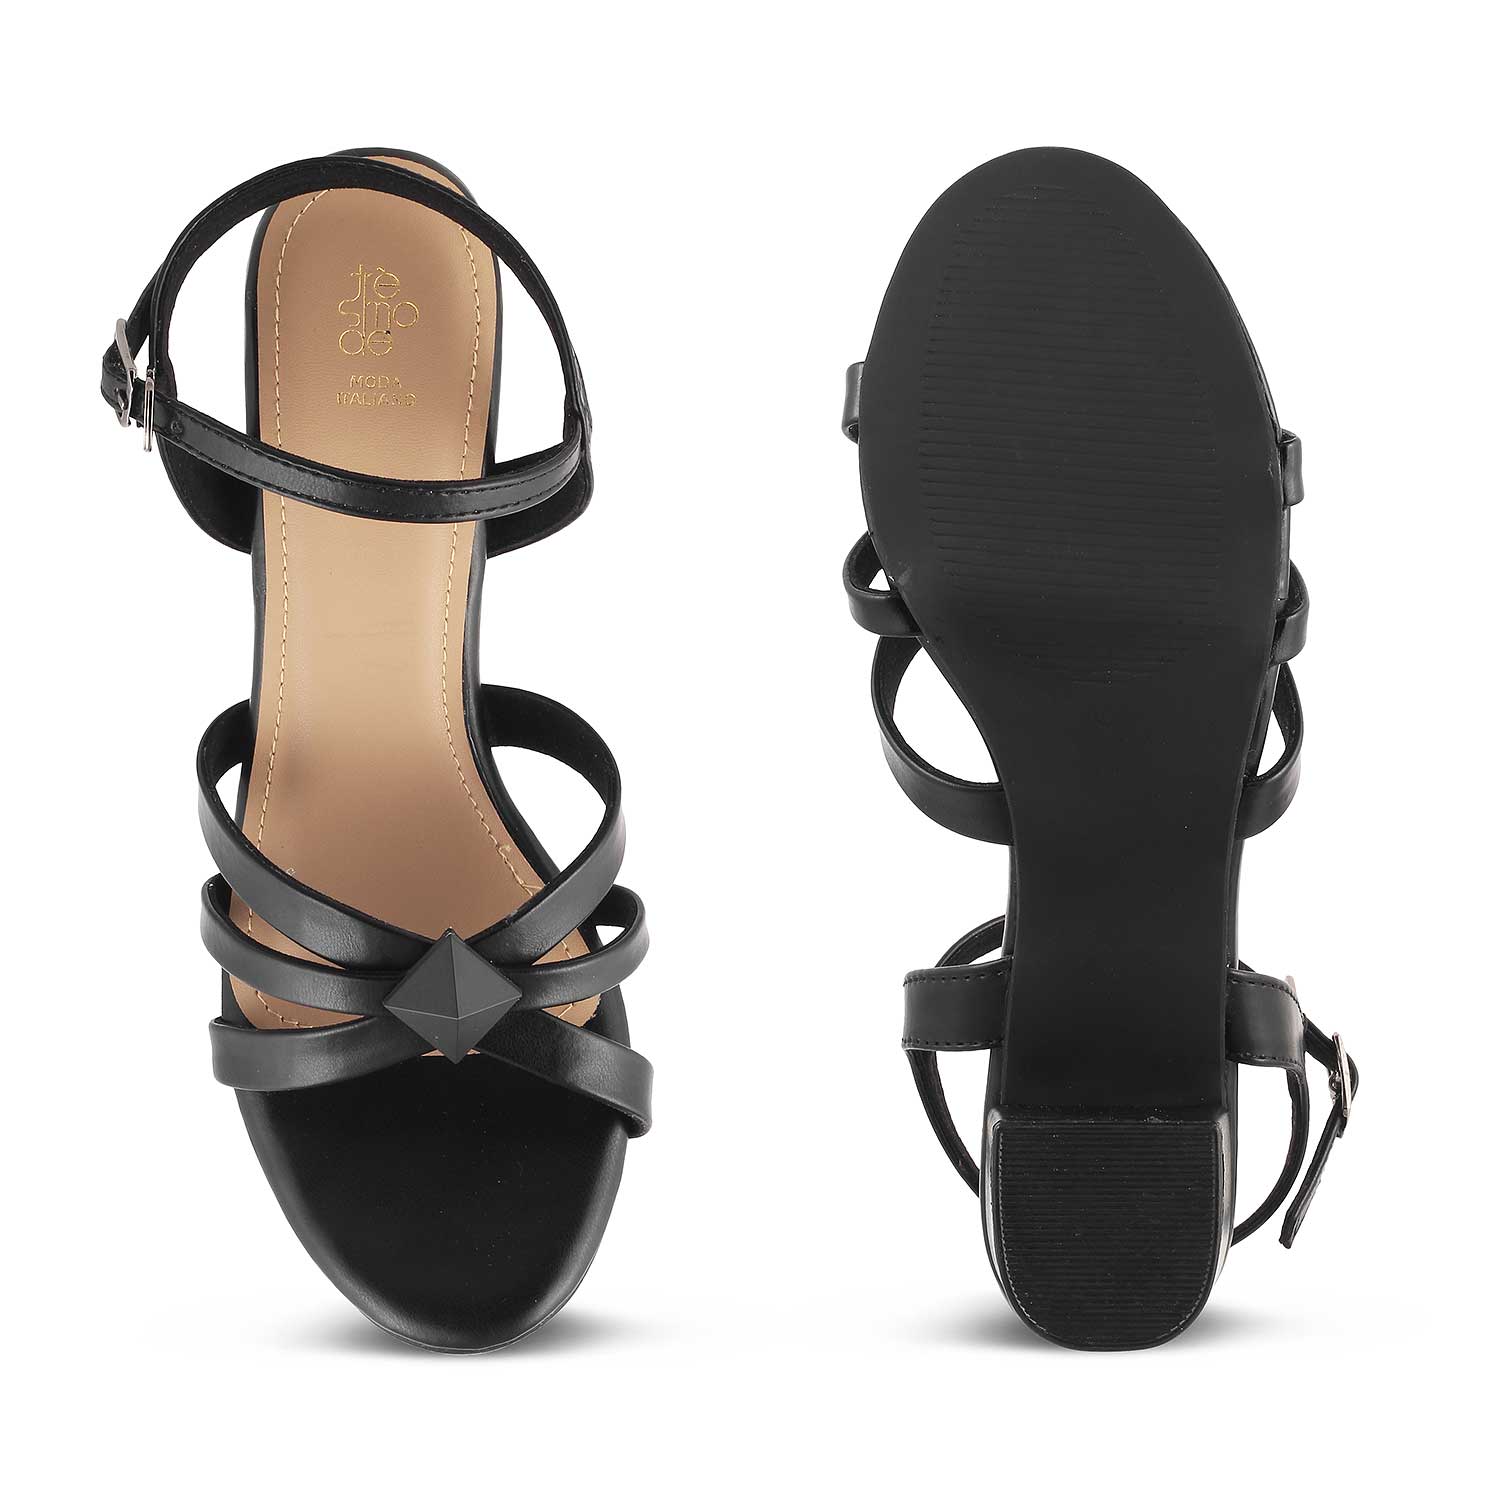 Tresmode-The Parma Black Women's Dress Block Heel Sandals Tresmode-Tresmode